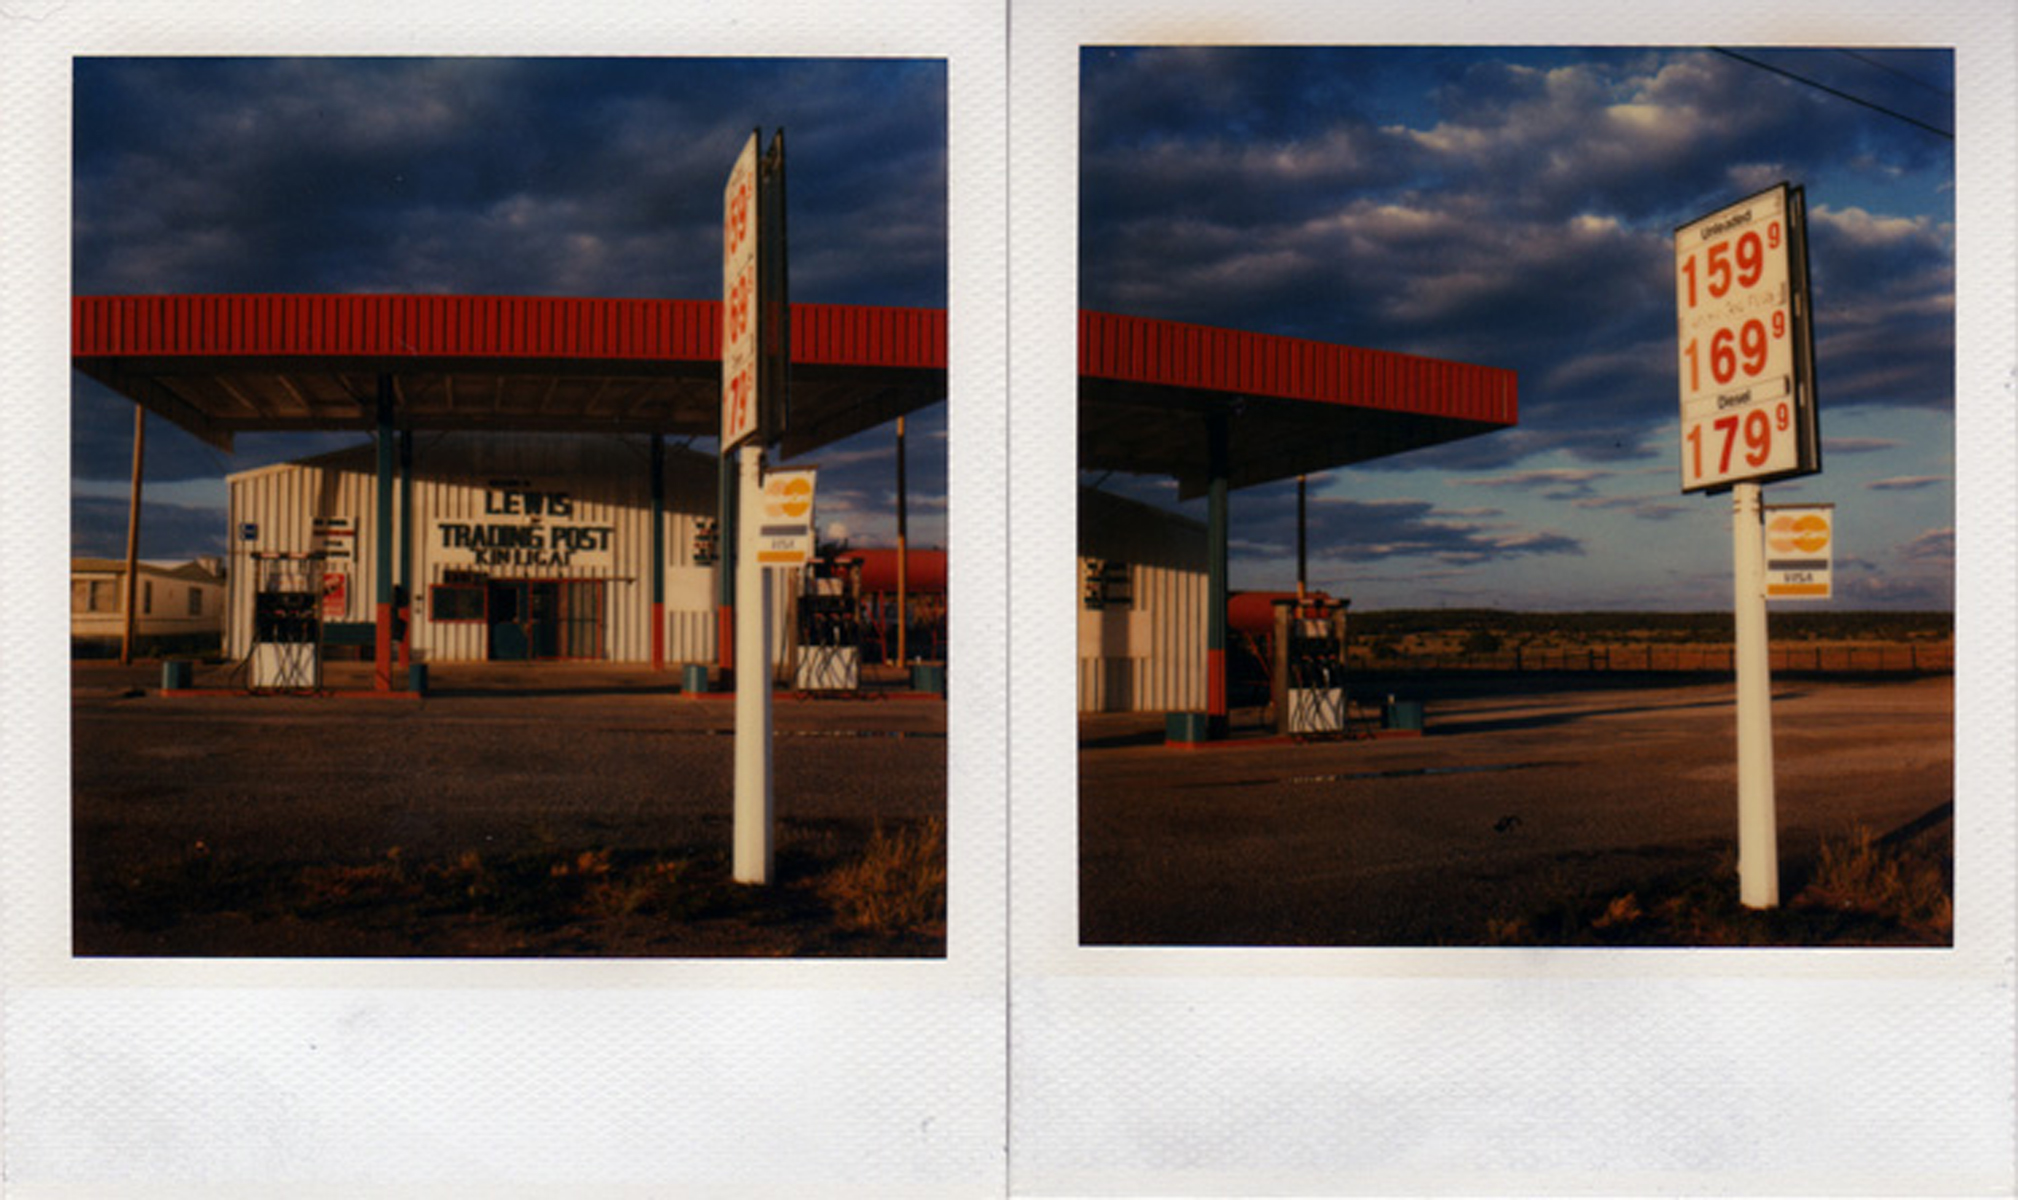 Price of gas, Arizona, 2004.